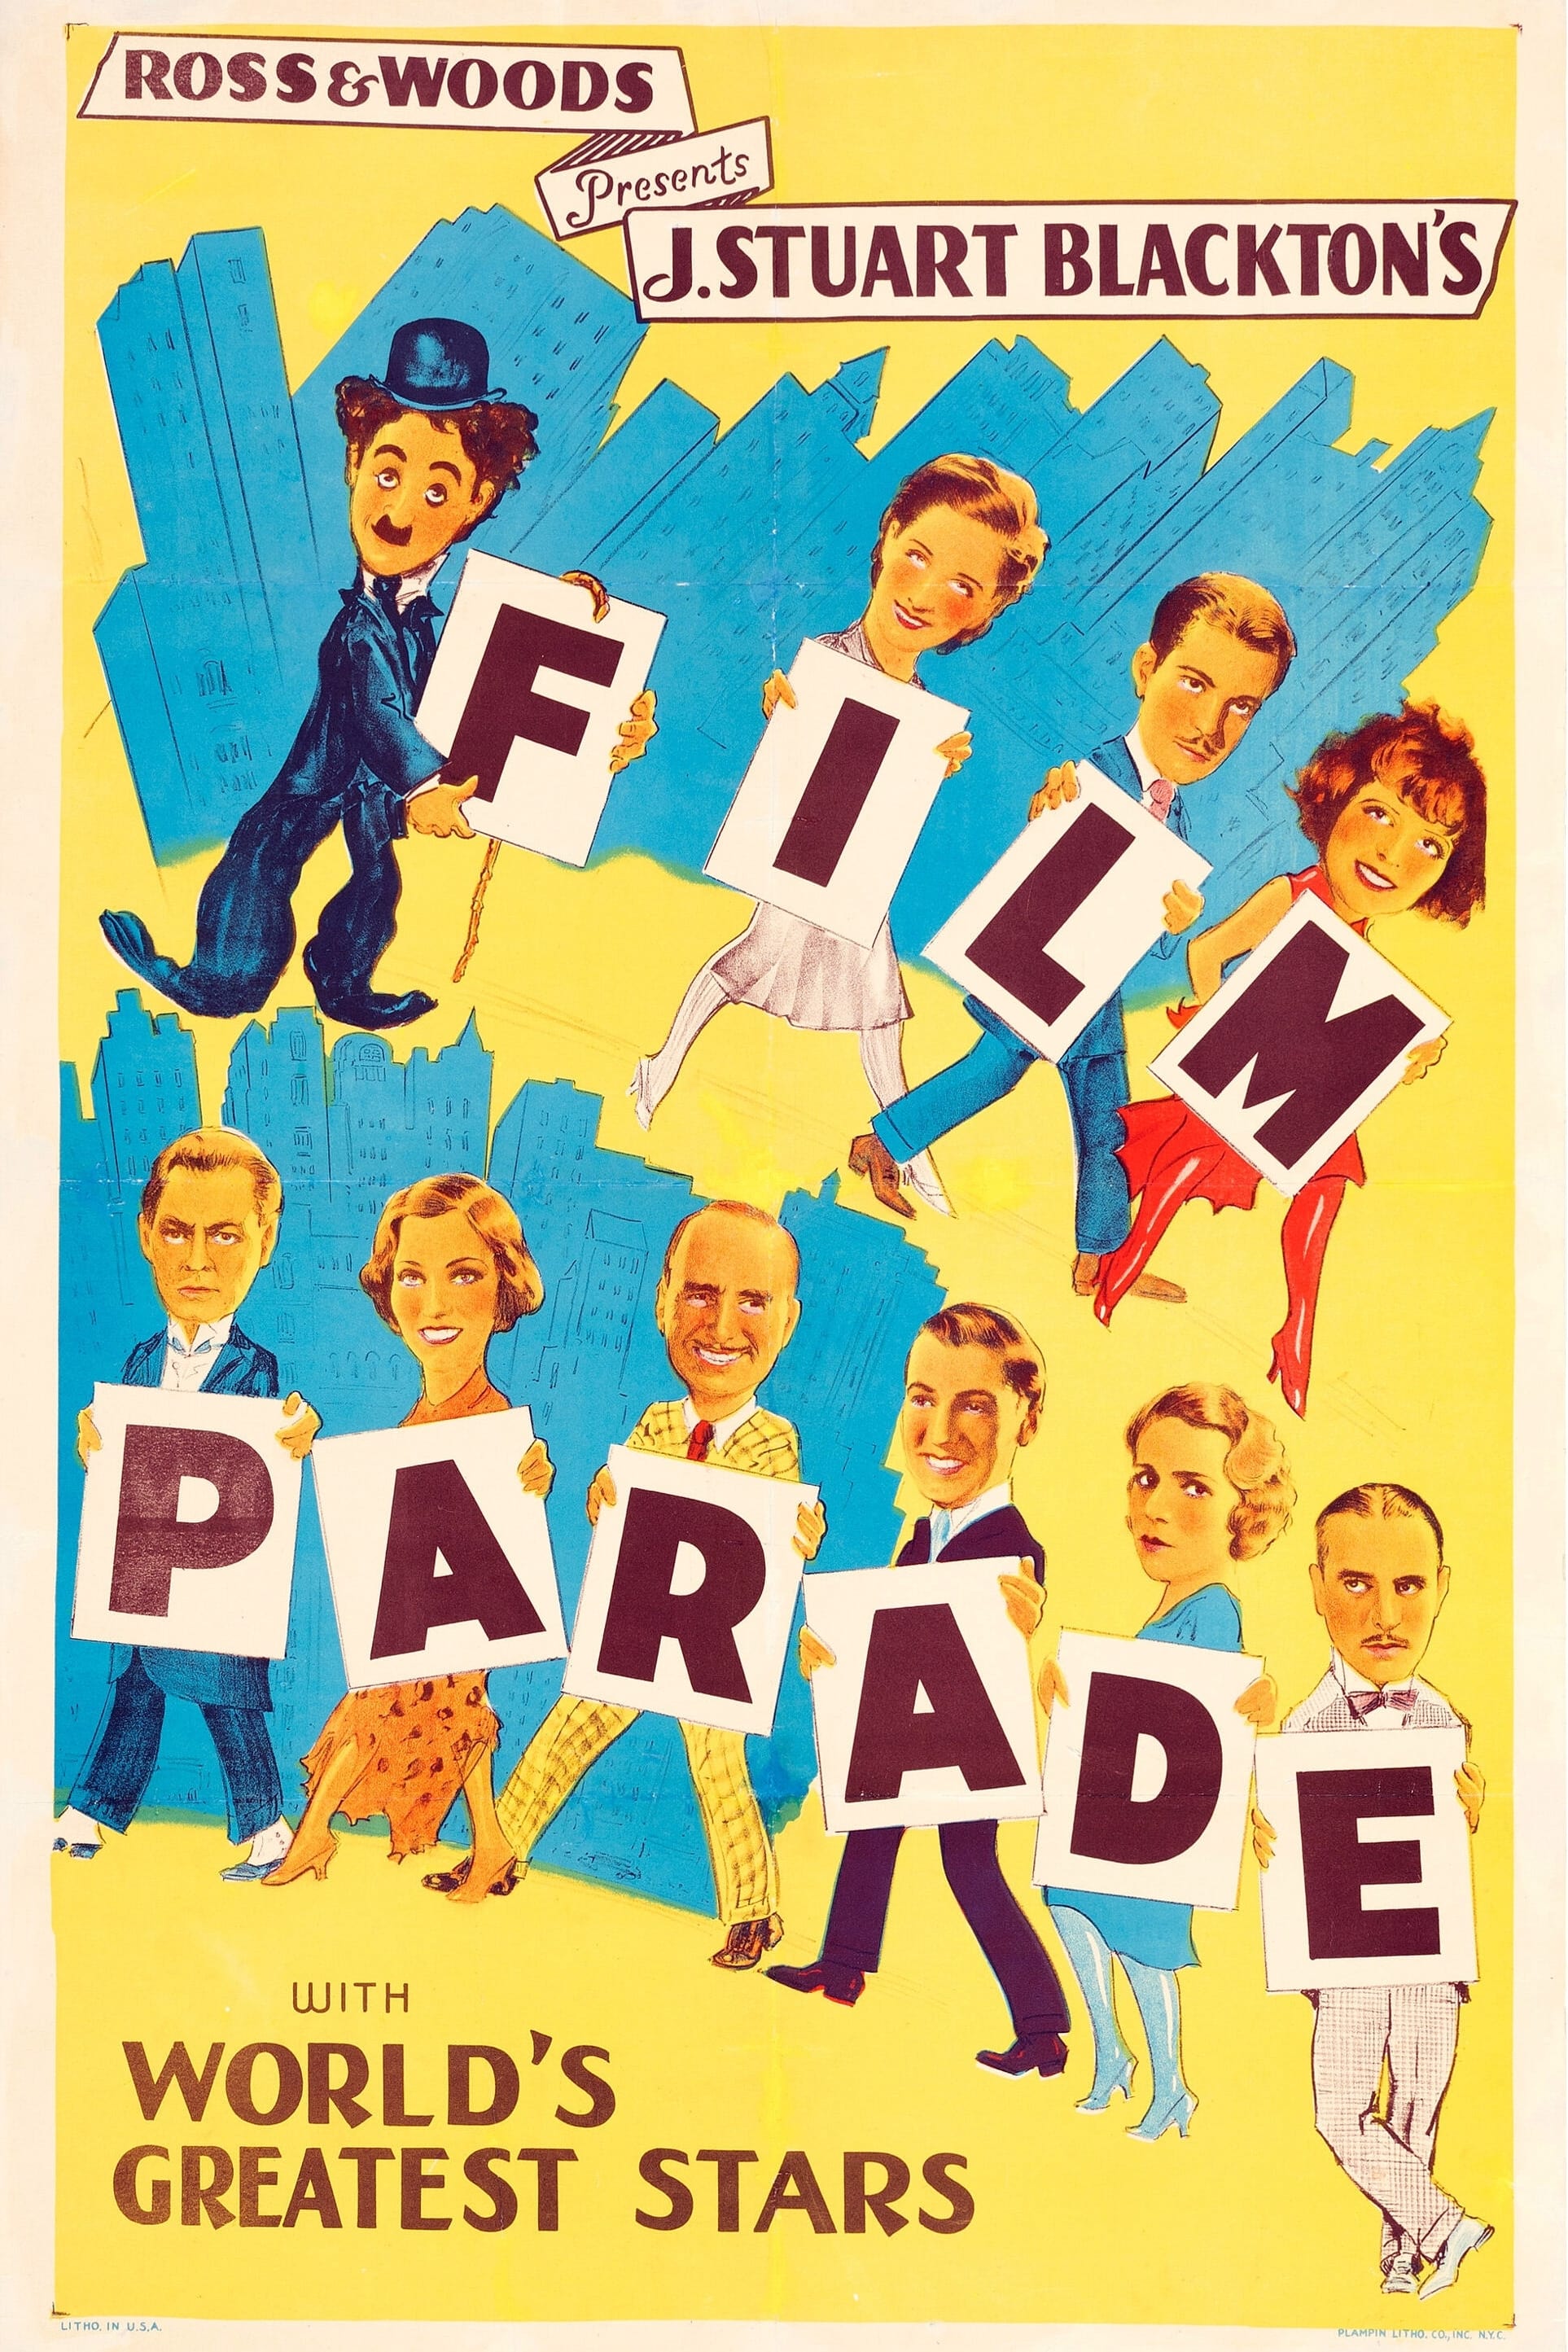 The Film Parade